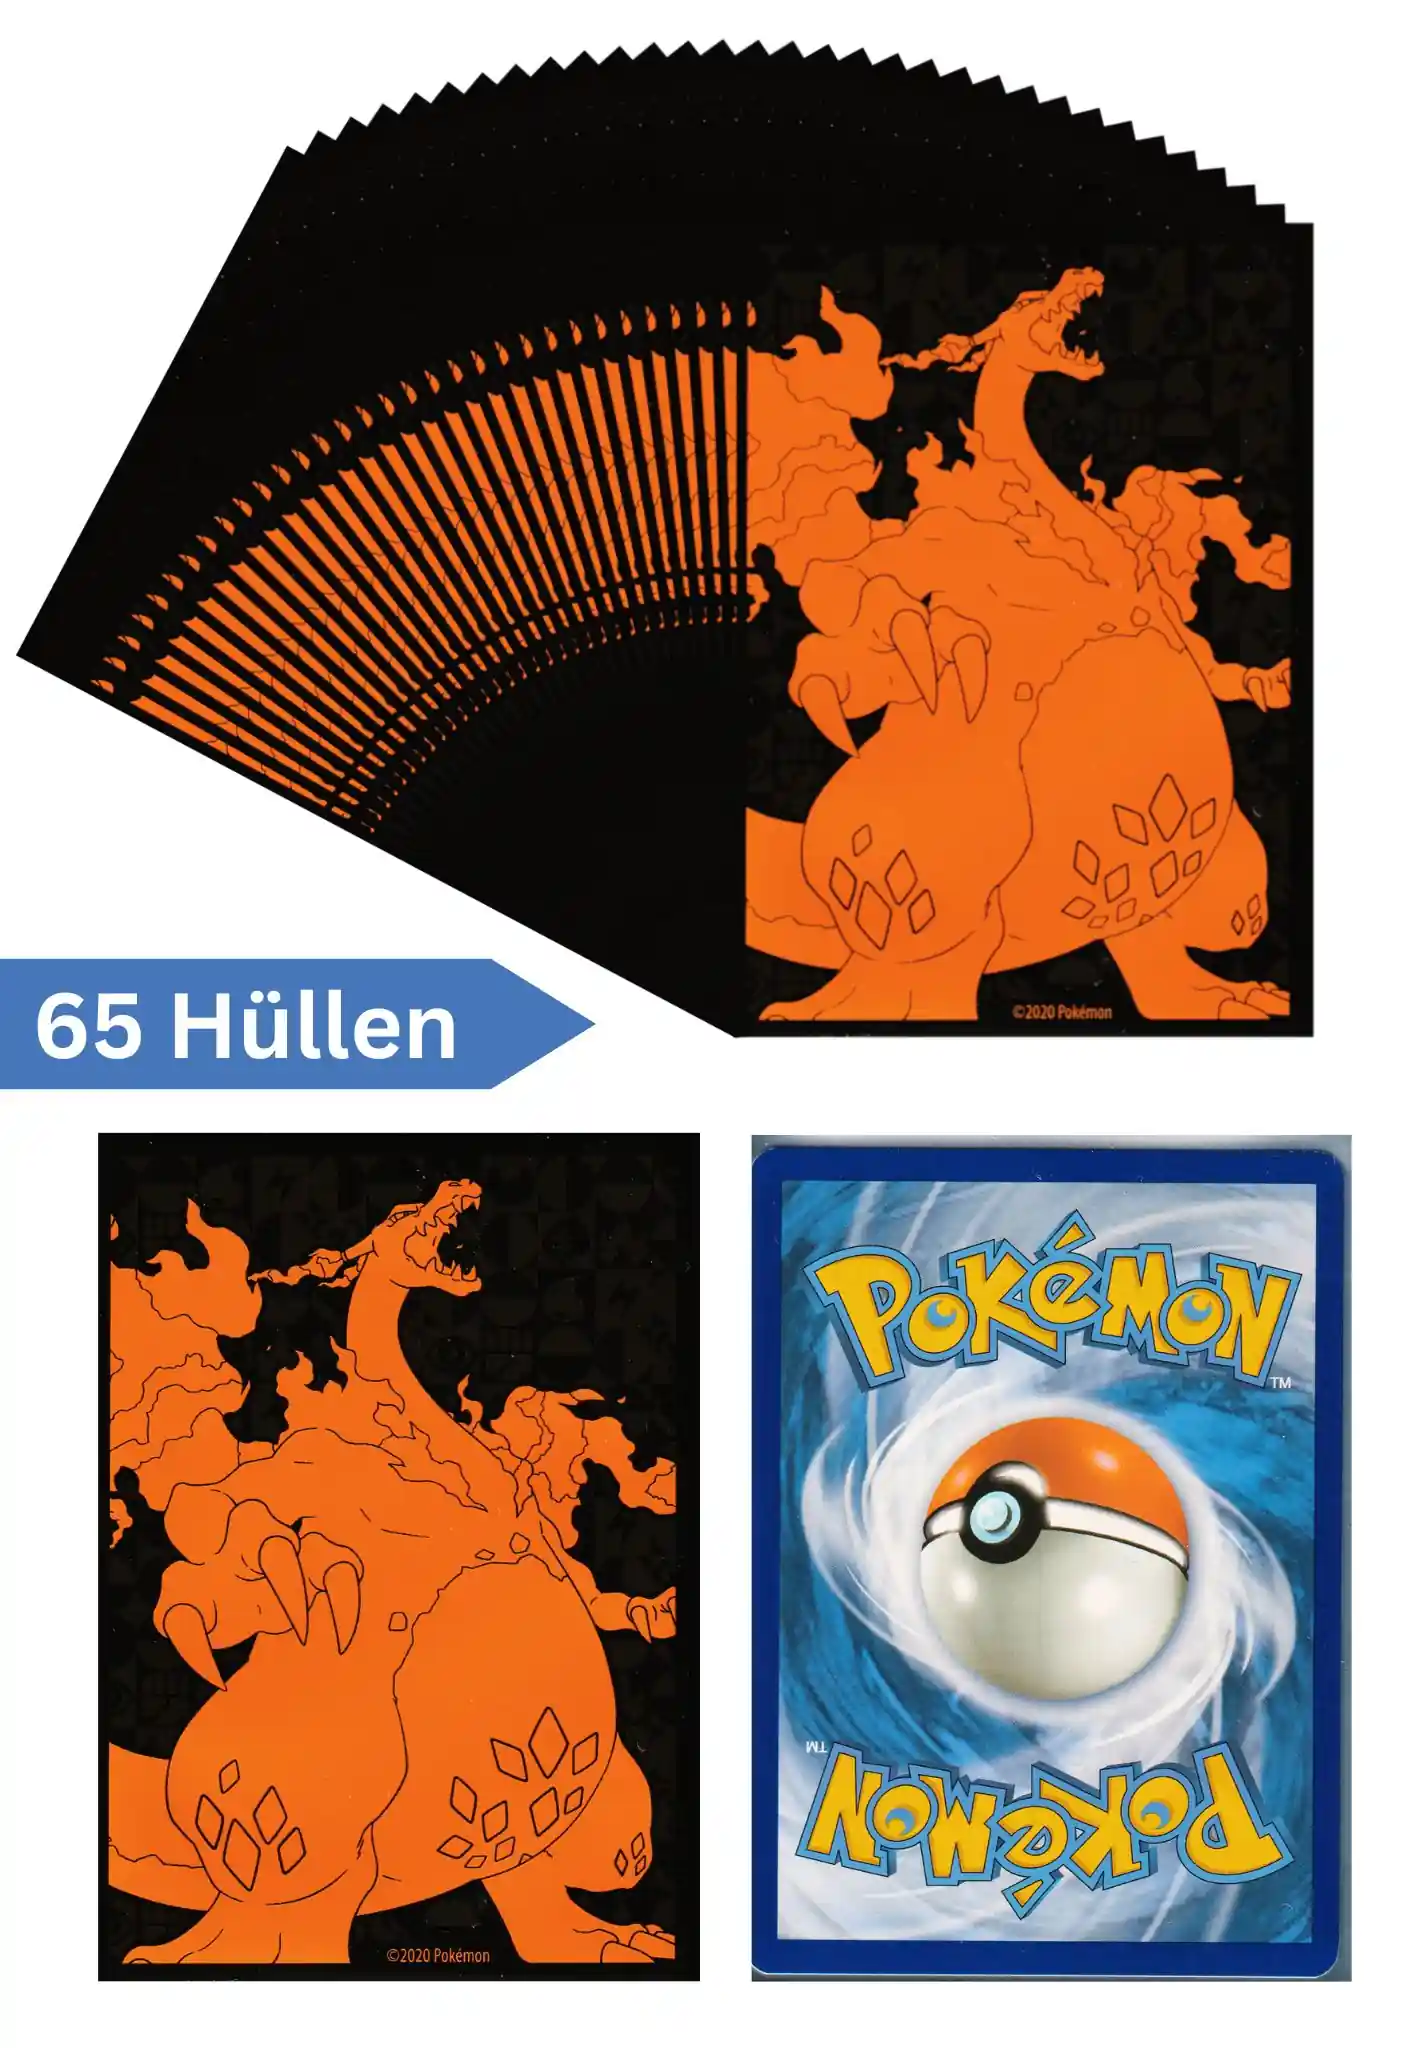 Pokemon Karten Schutzhüllen 65 Stück (Top Trainer Box Weg des Champs)